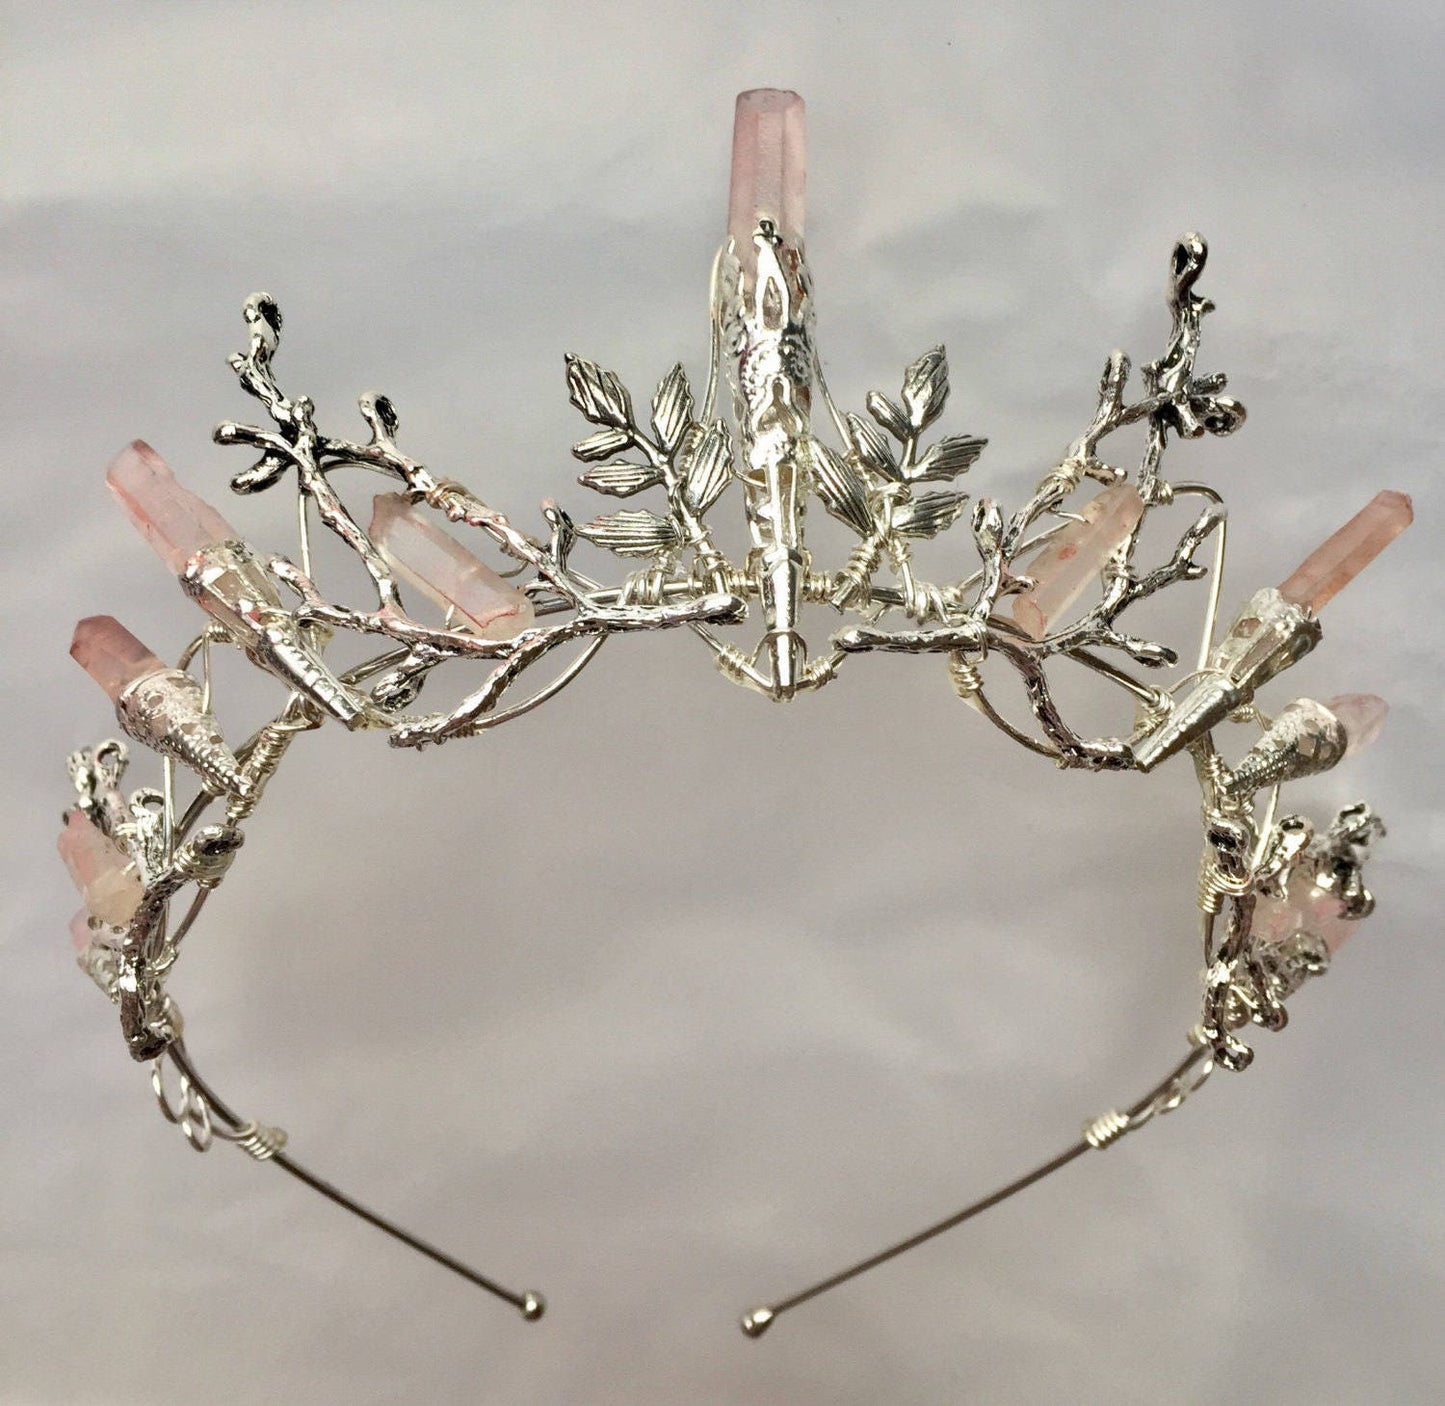 The INDIE ROSE Pink Quartz Crown